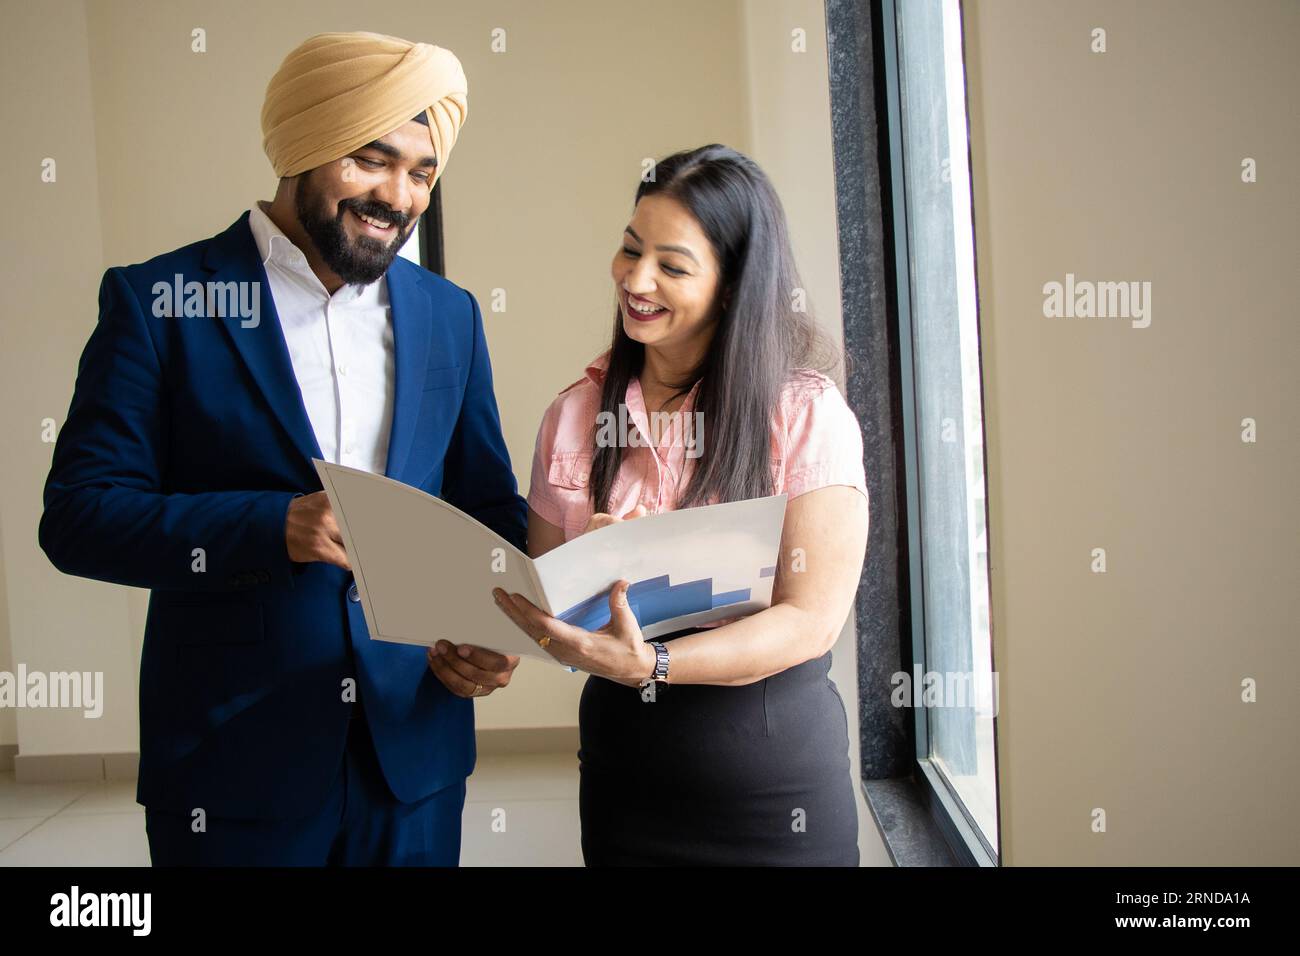 Indischer sikh-Geschäftsmann in formeller Kleidung diskutiert Arbeit mit junger weiblicher Sekretärin, die Akten im Firmenbüro hält. Stockfoto